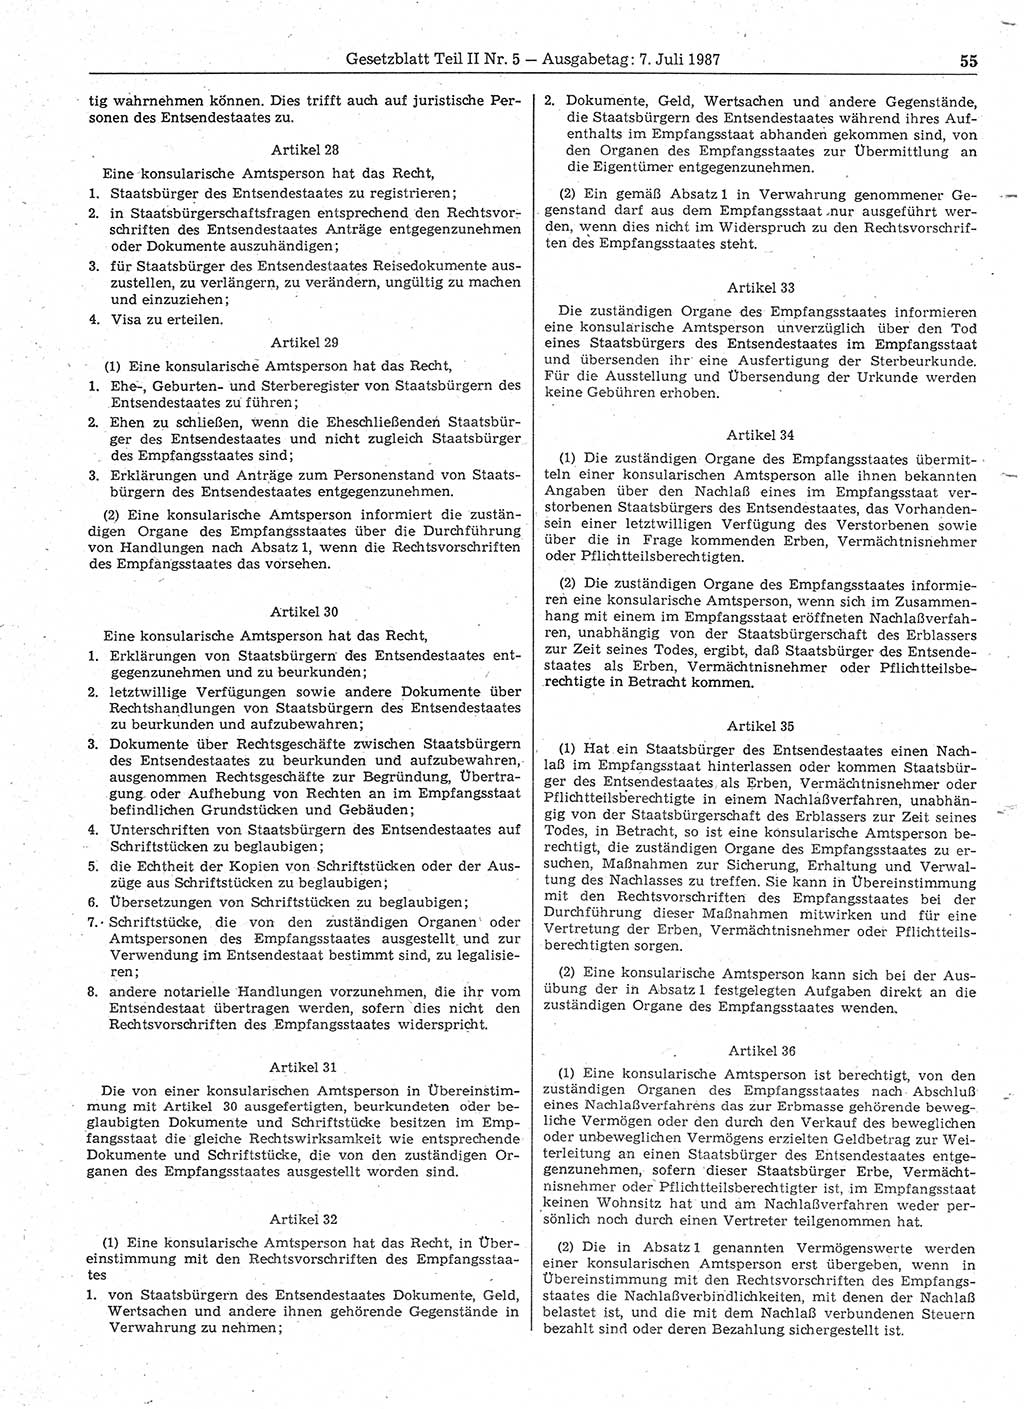 Gesetzblatt (GBl.) der Deutschen Demokratischen Republik (DDR) Teil ⅠⅠ 1987, Seite 55 (GBl. DDR ⅠⅠ 1987, S. 55)